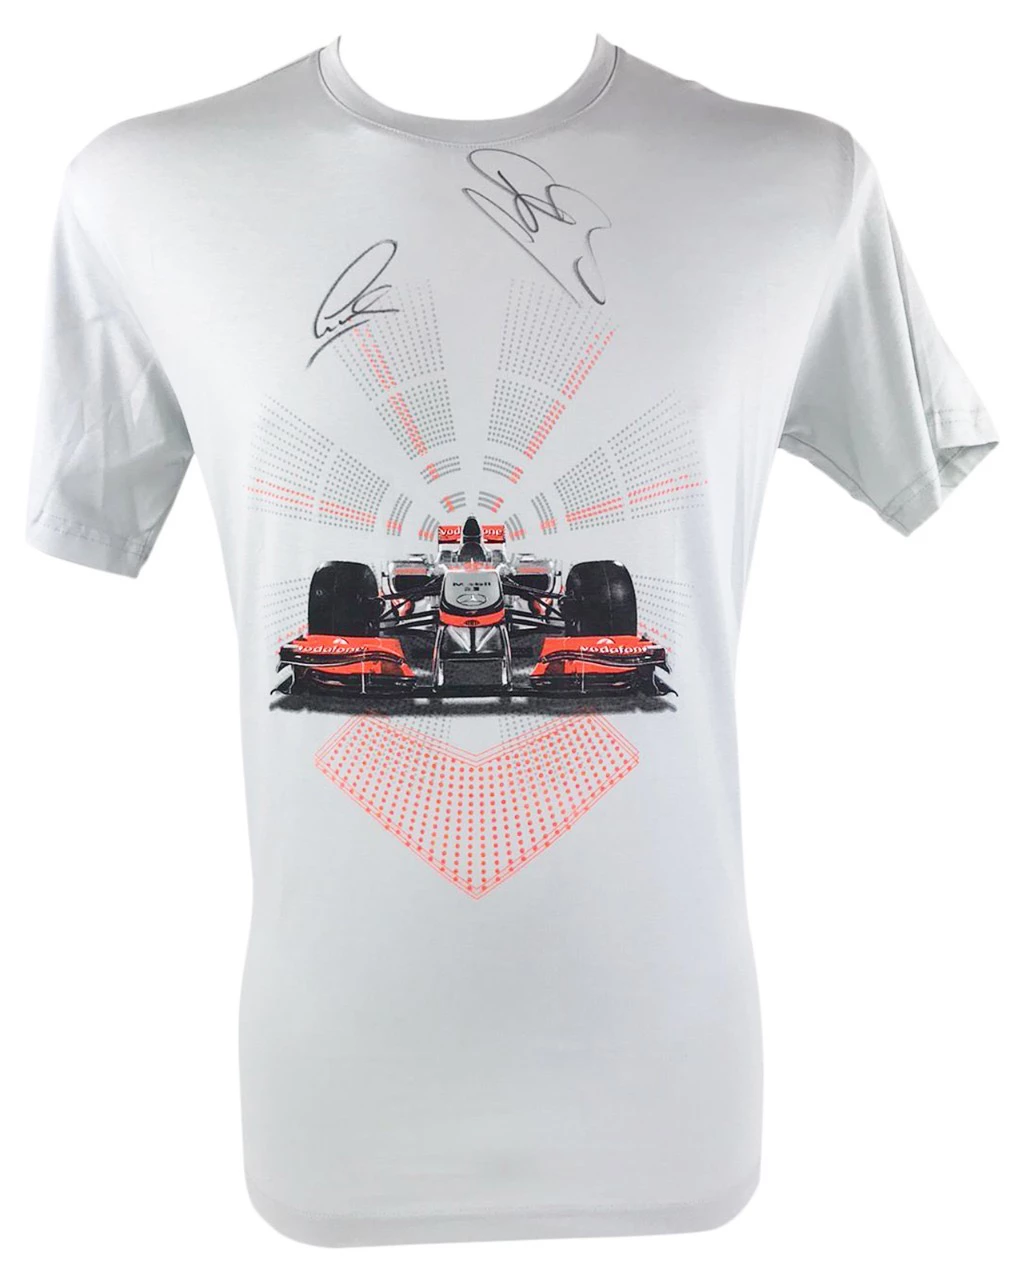 Signed Lewis Hamilton & Jenson Button Shirt